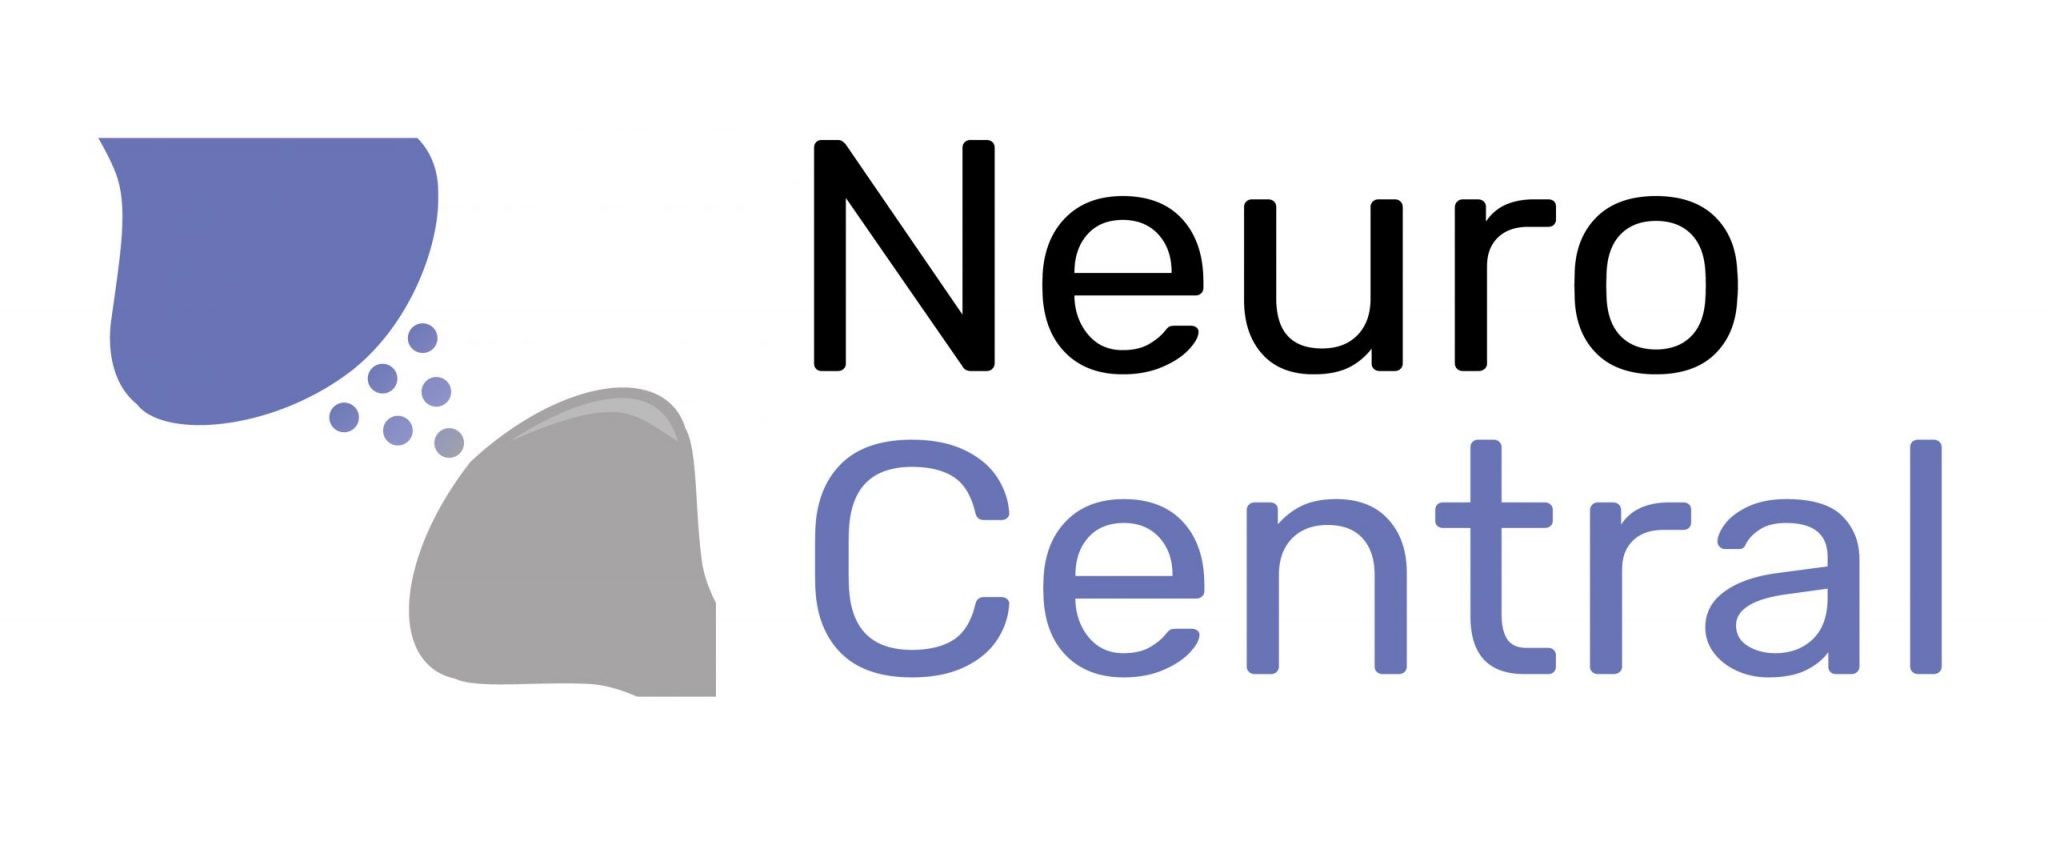 Free Neurology Logo Designs - DIY Neurology Logo Maker - Designmantic.com